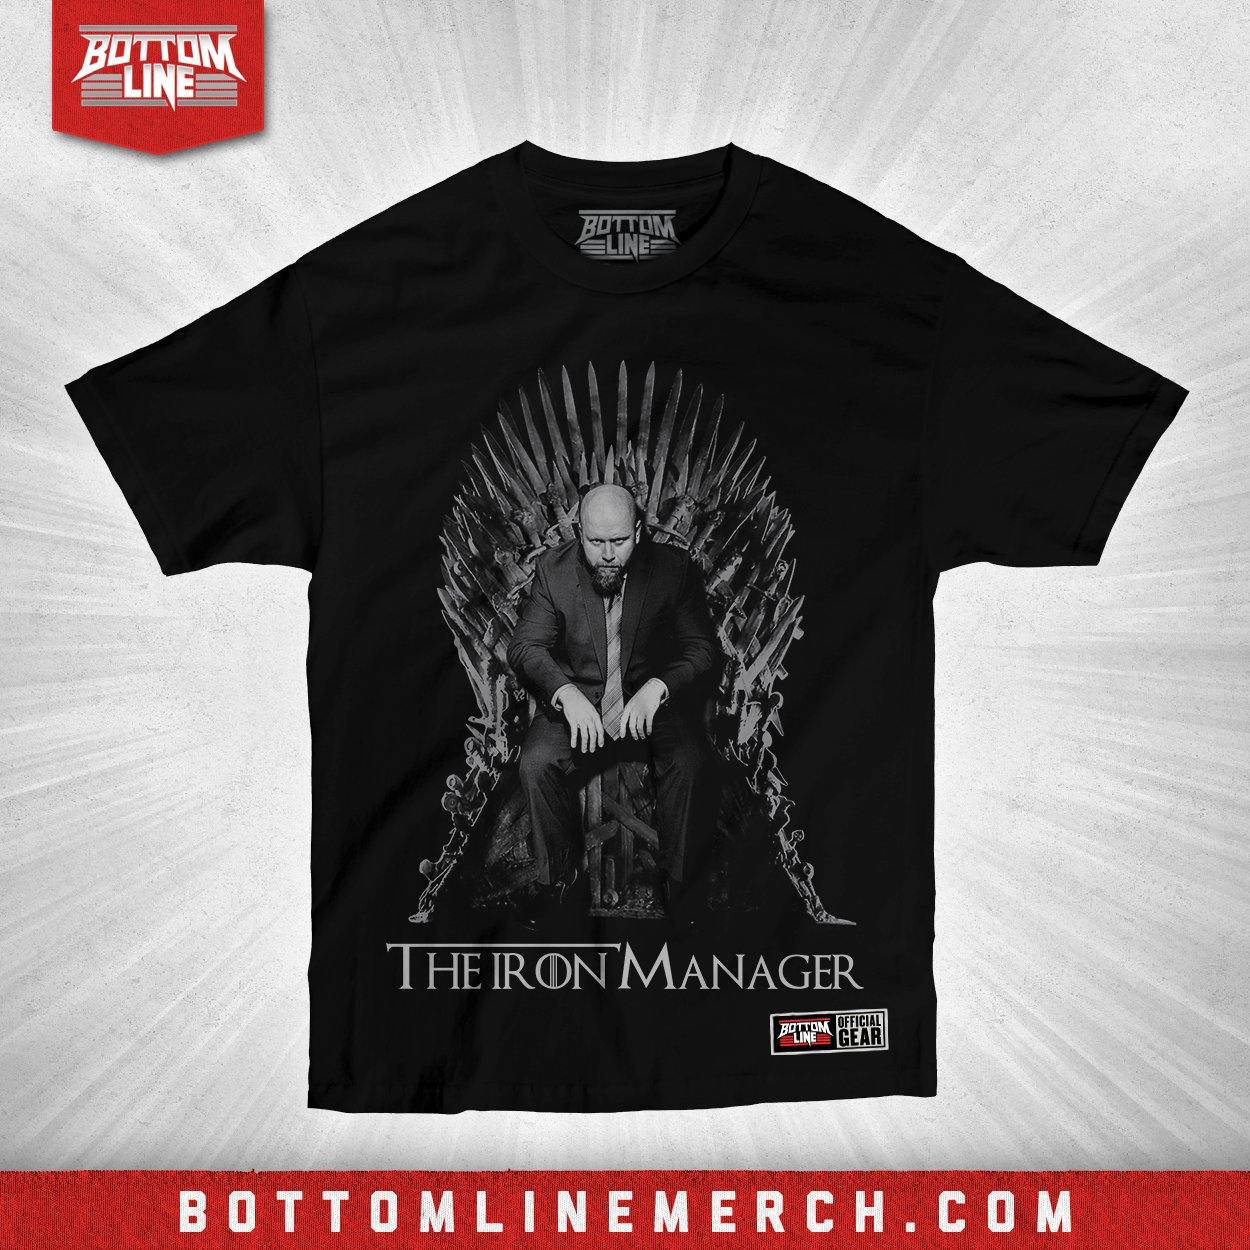 Buy Now – OI4K "Iron Manager" Shirt – Wrestler & Wrestling Merch – Bottom Line